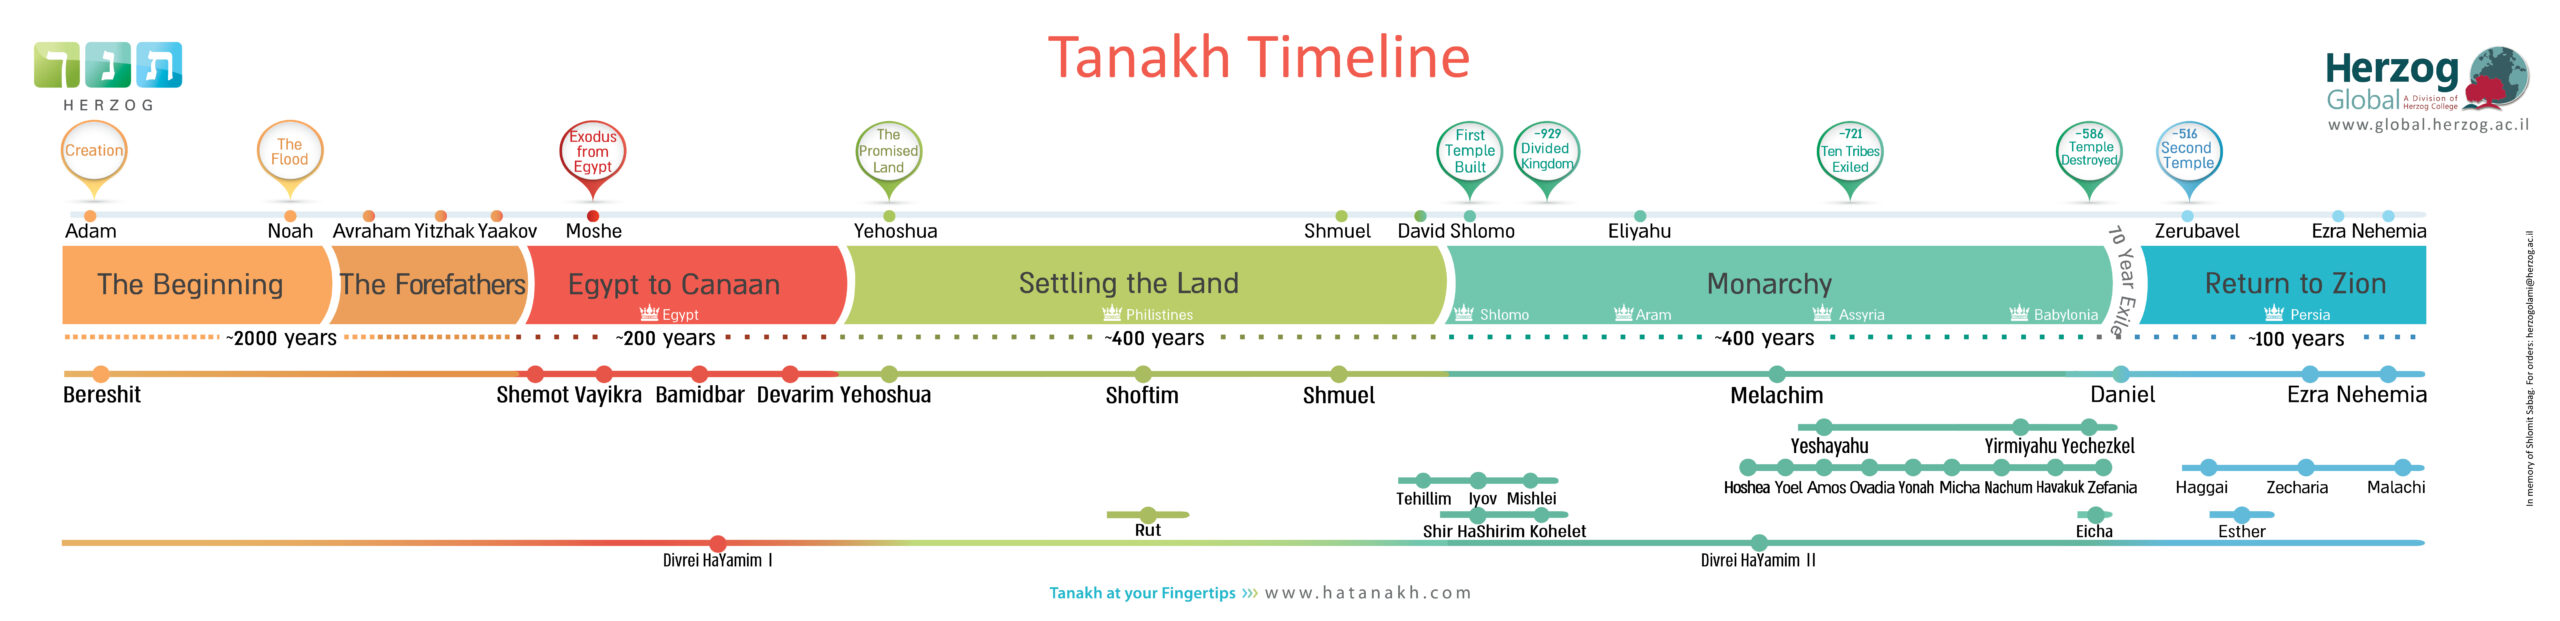 Tanakh Timeline